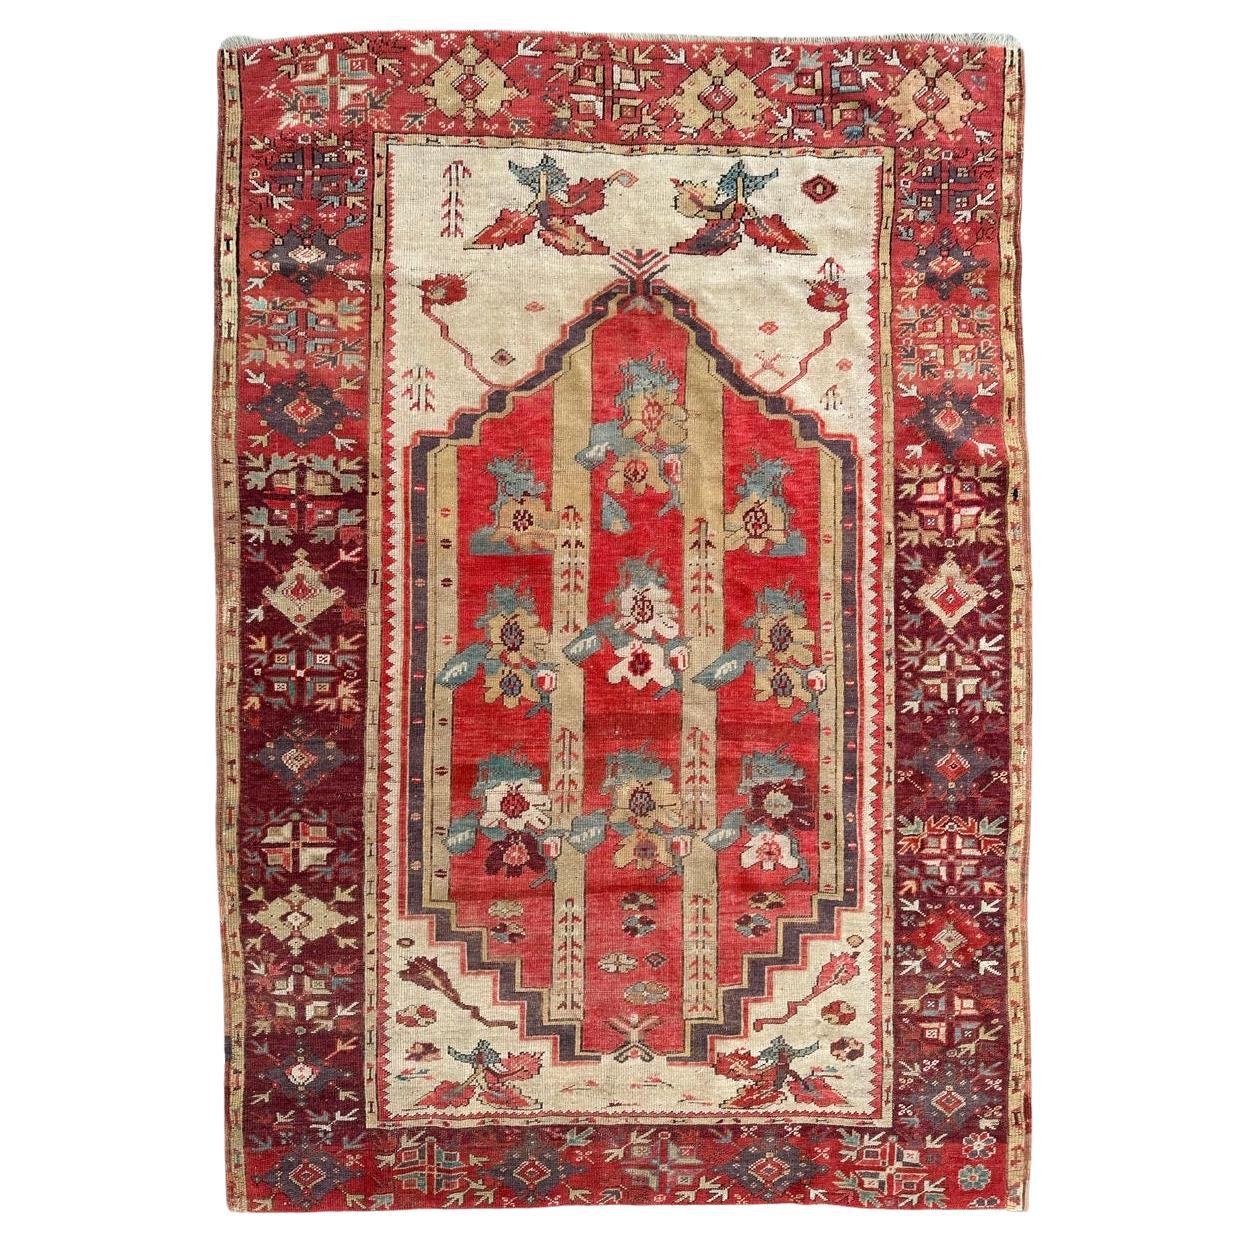 Bobyrug's Pretty antique Turkish fine early 19th century rug (Joli tapis ancien turc du début du 19ème siècle) 